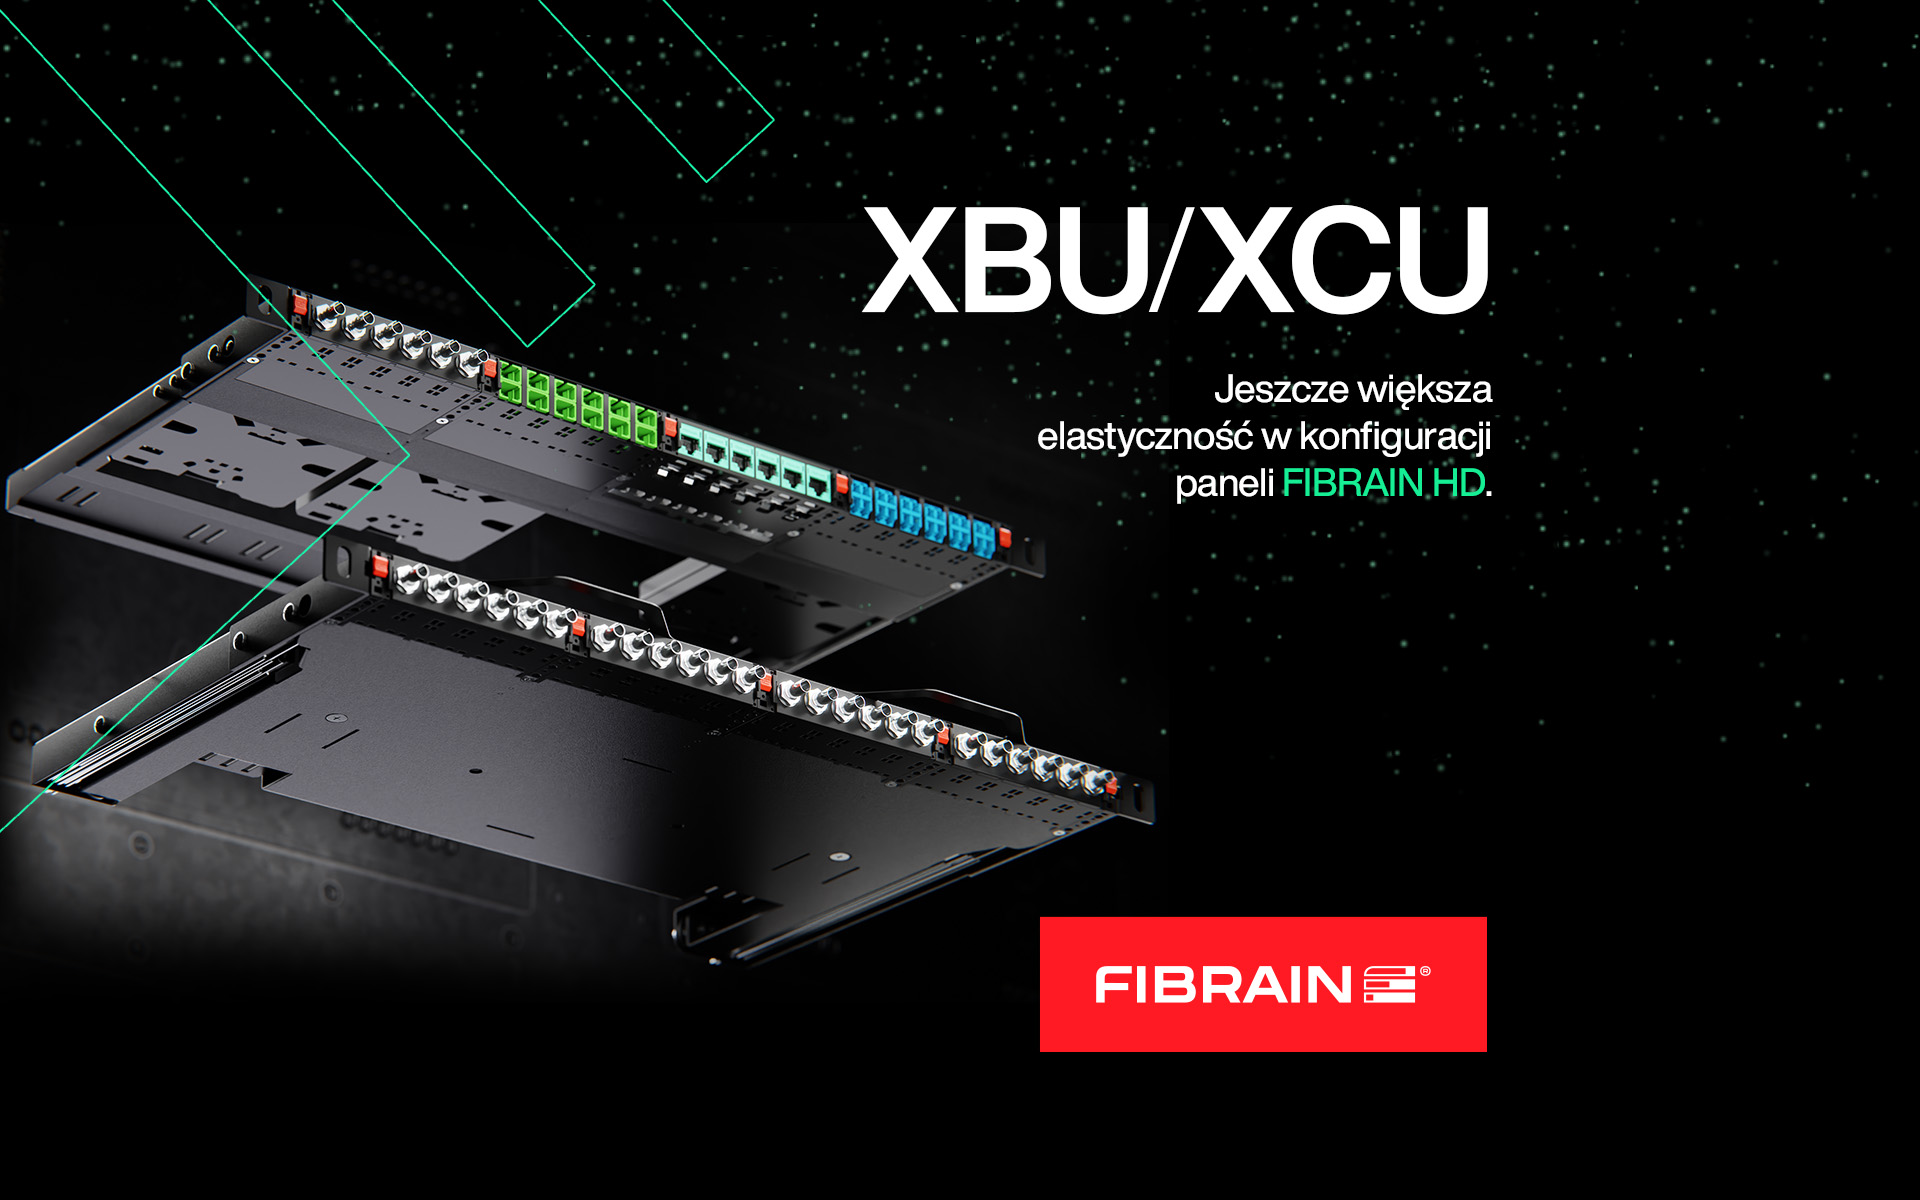 Jeszcze większa elastyczność w konfiguracji paneli FIBRAIN HD!